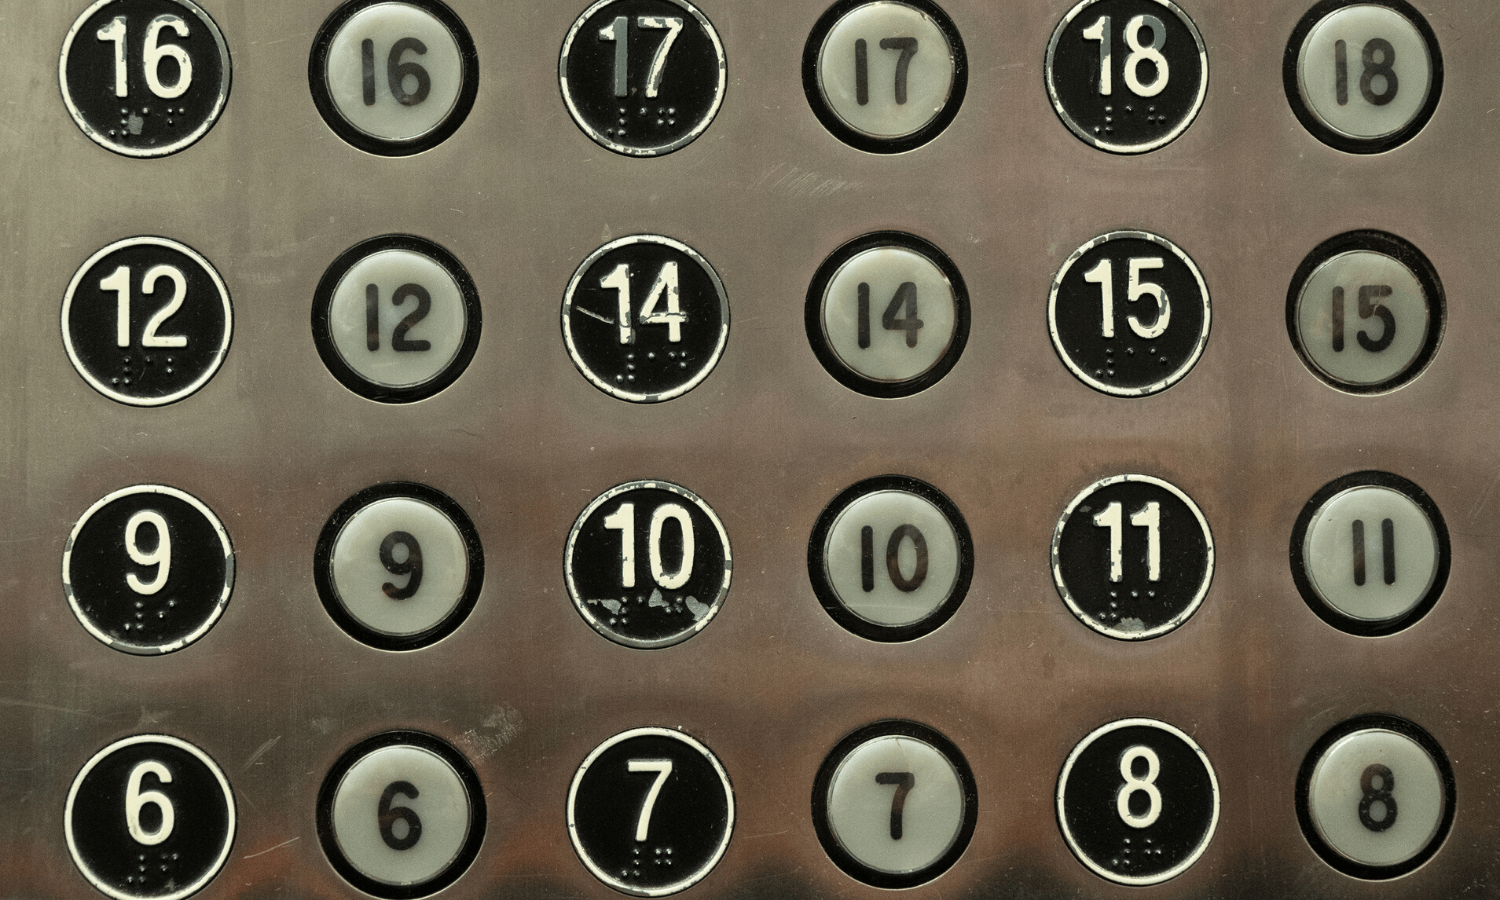 Aufgrund von Aberglaube fehlt in einem Gebäude der 13. Stock. Daher findet man im Aufzug auch keinen Knopf mit der Nummer 13. © iStock.com